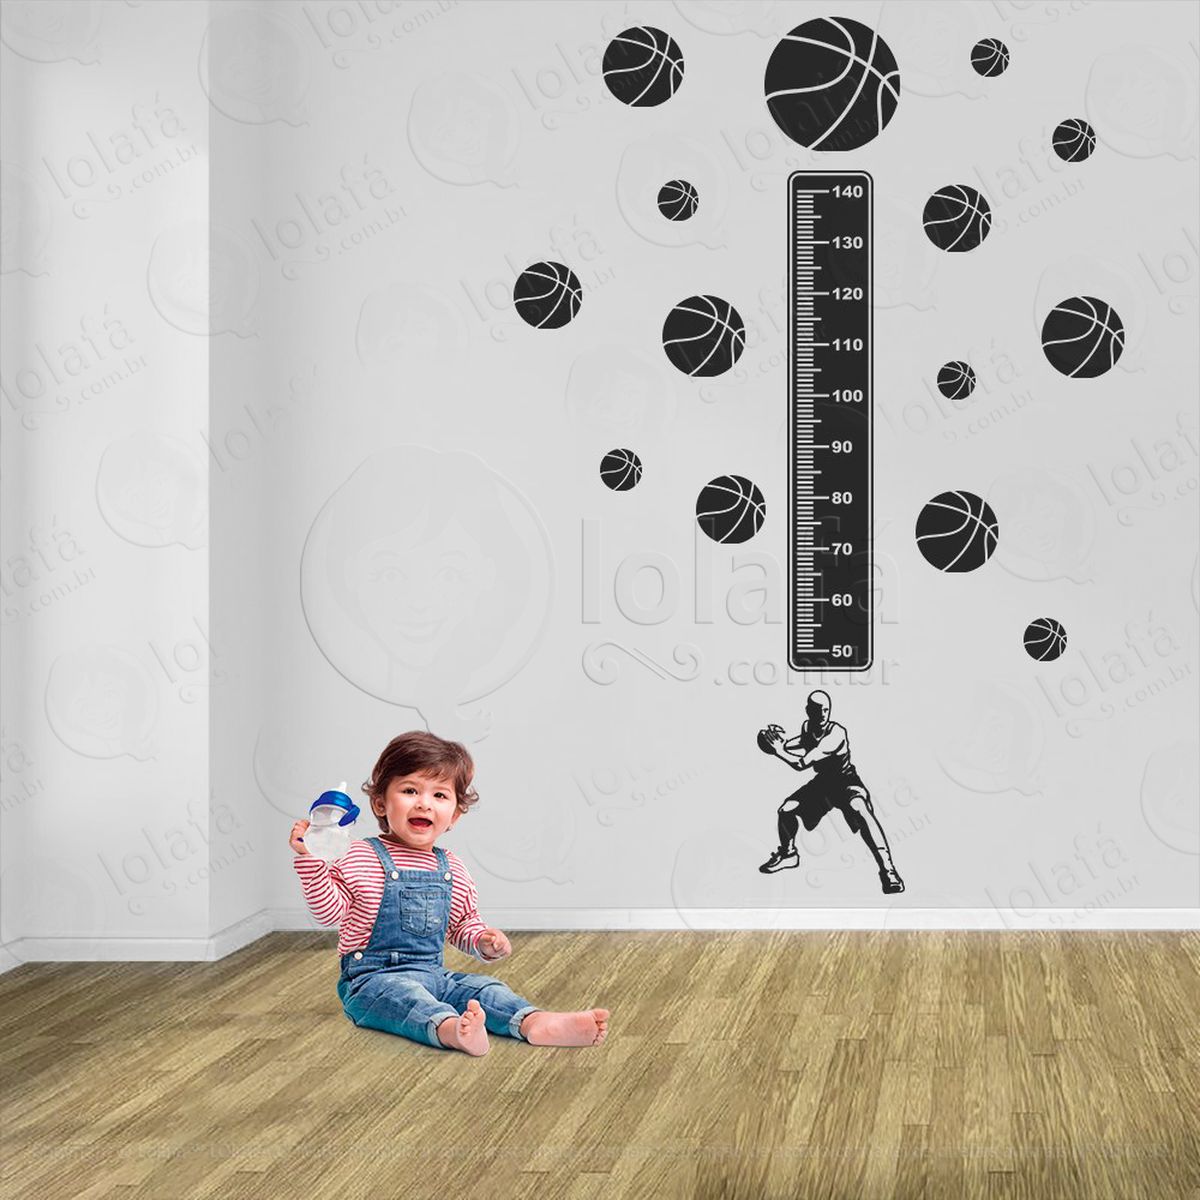 basquetebol e bolas de basquete adesivo régua de crescimento infantil, medidor de altura para quarto, porta e parede - mod:245